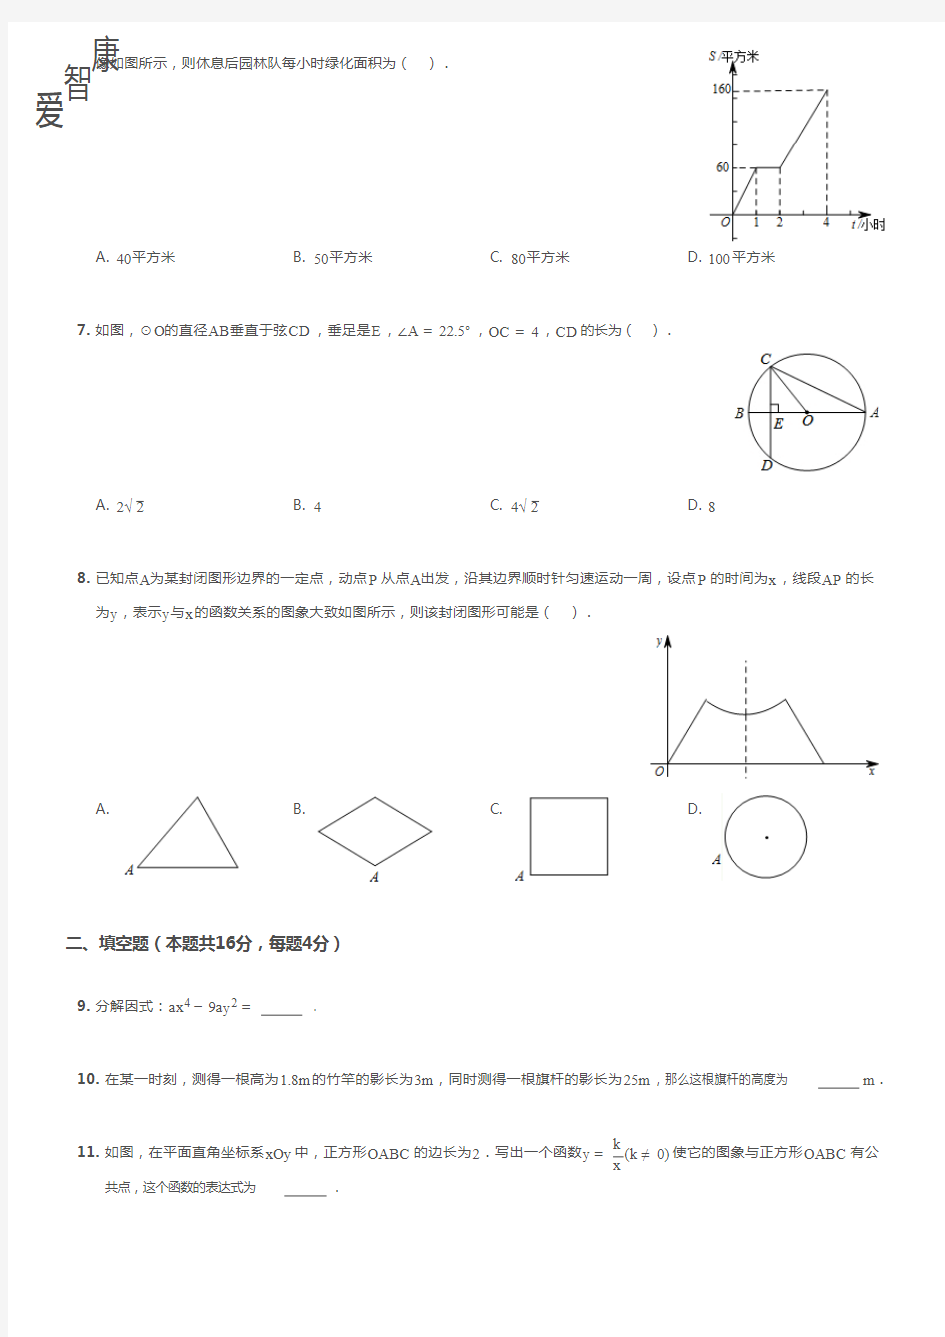 2014北京中考数学试卷